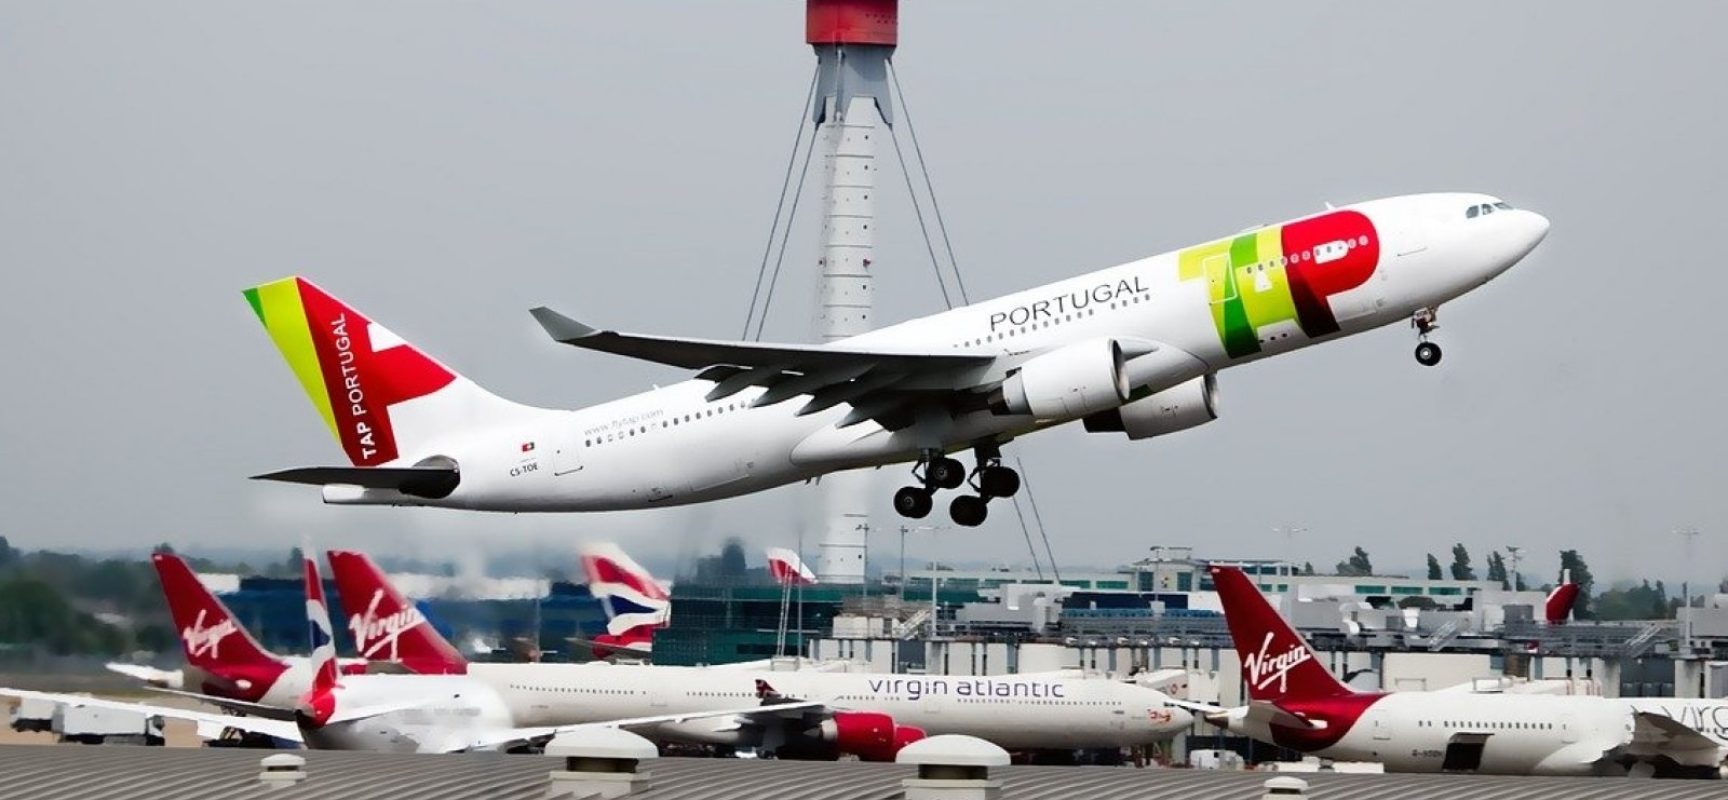 Portugal estende suspensão de voos com origem e destino ao Brasil até março